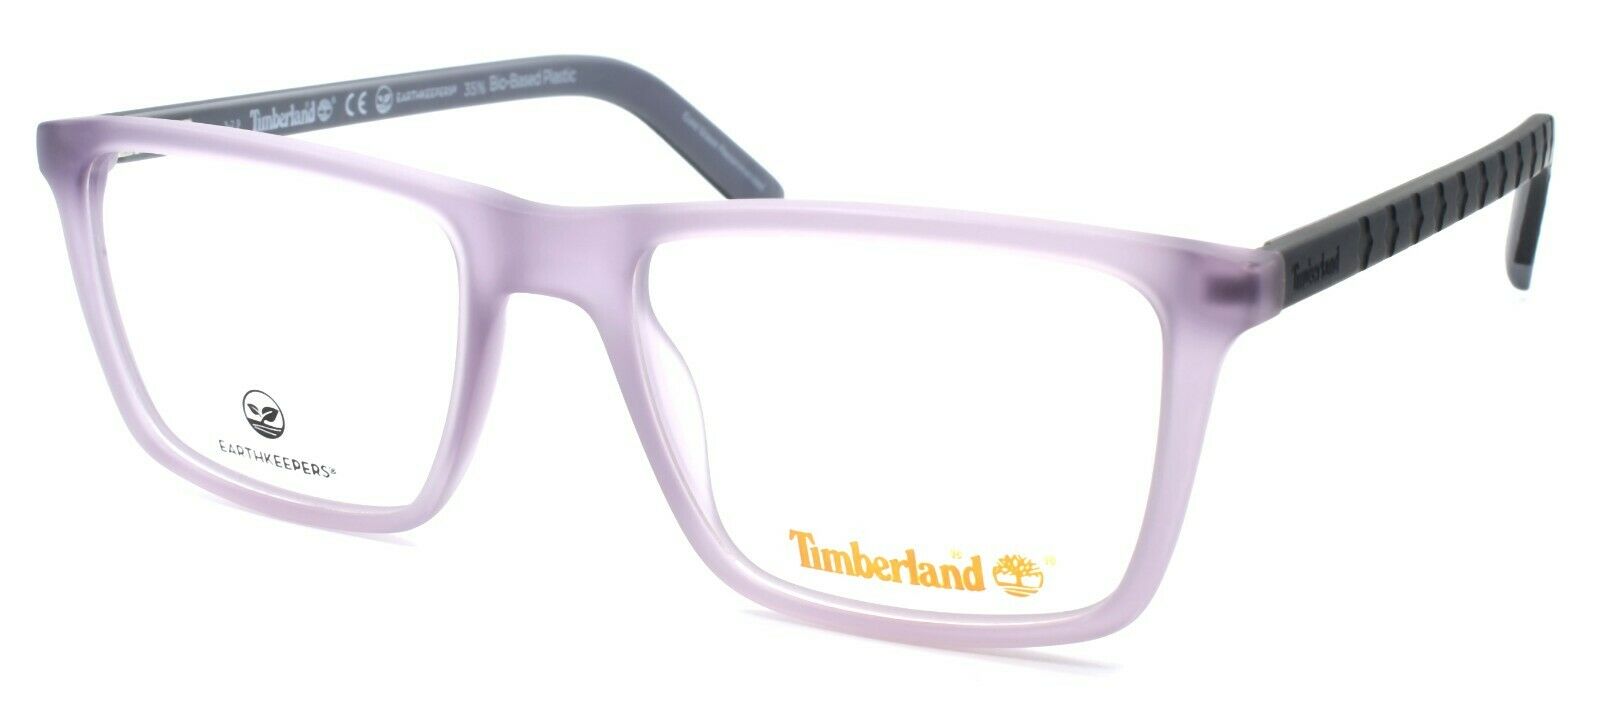 1-TIMBERLAND TB1680 020 Men's Eyeglasses Frames 52-18-145 Matte Violet-889214162748-IKSpecs